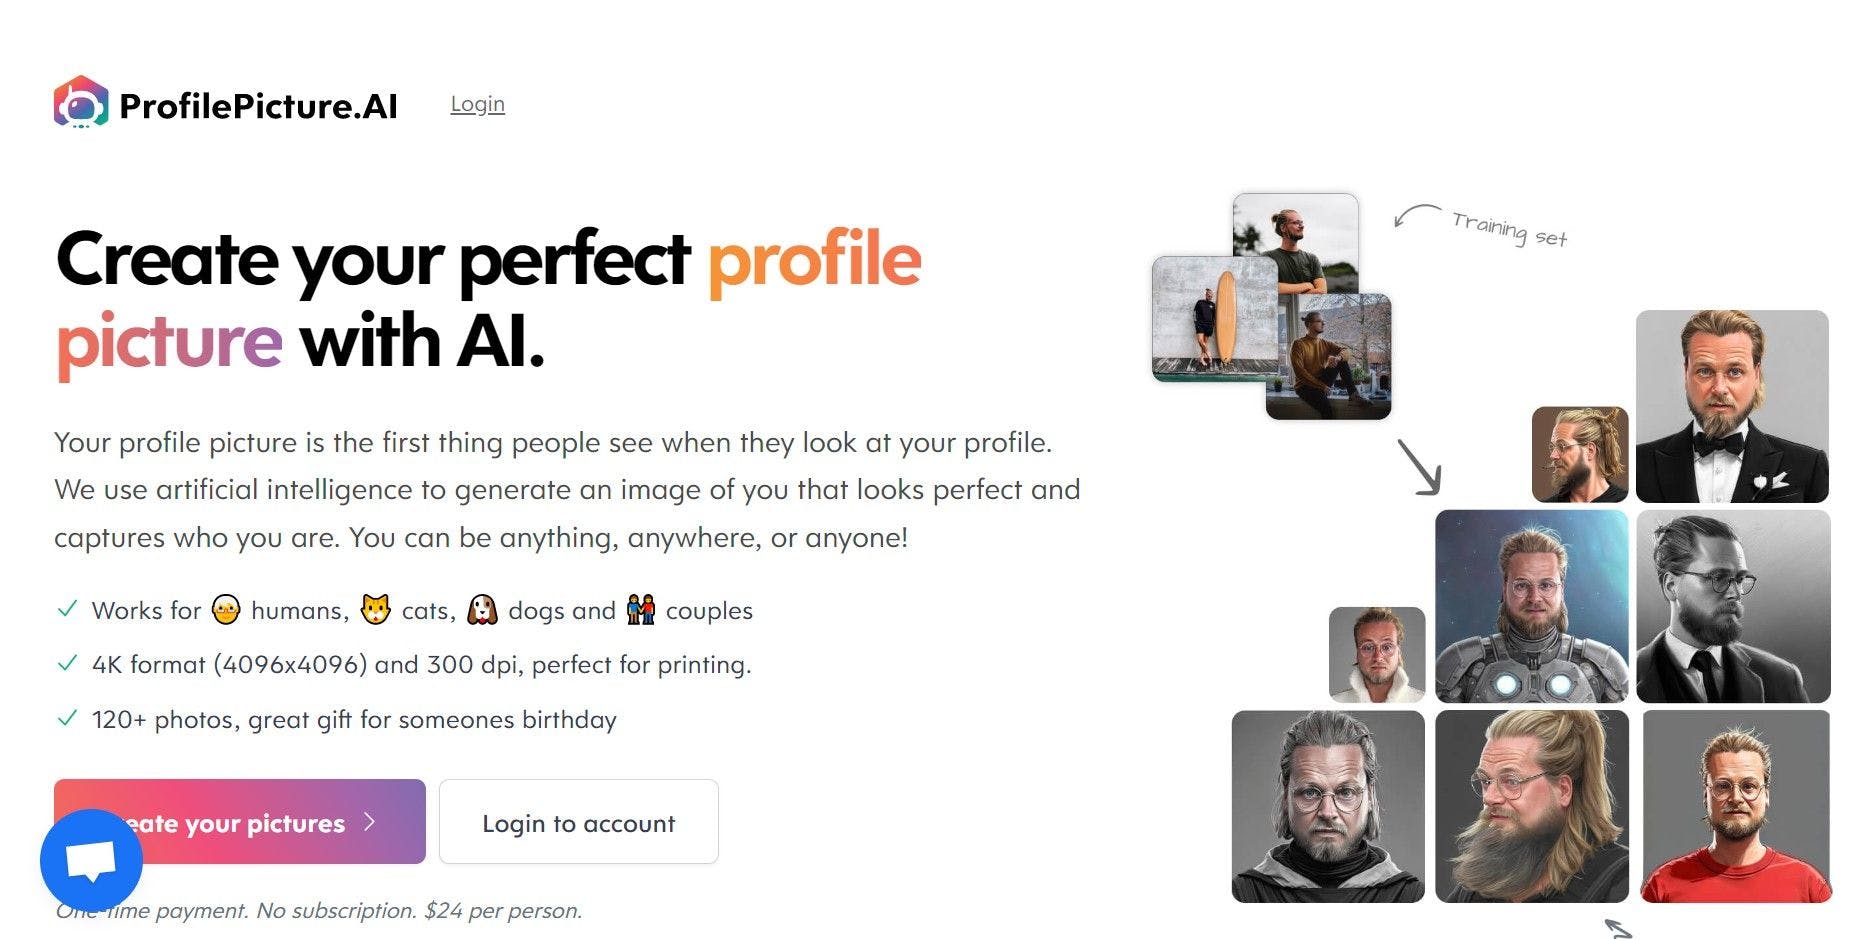 Profile Picture AI